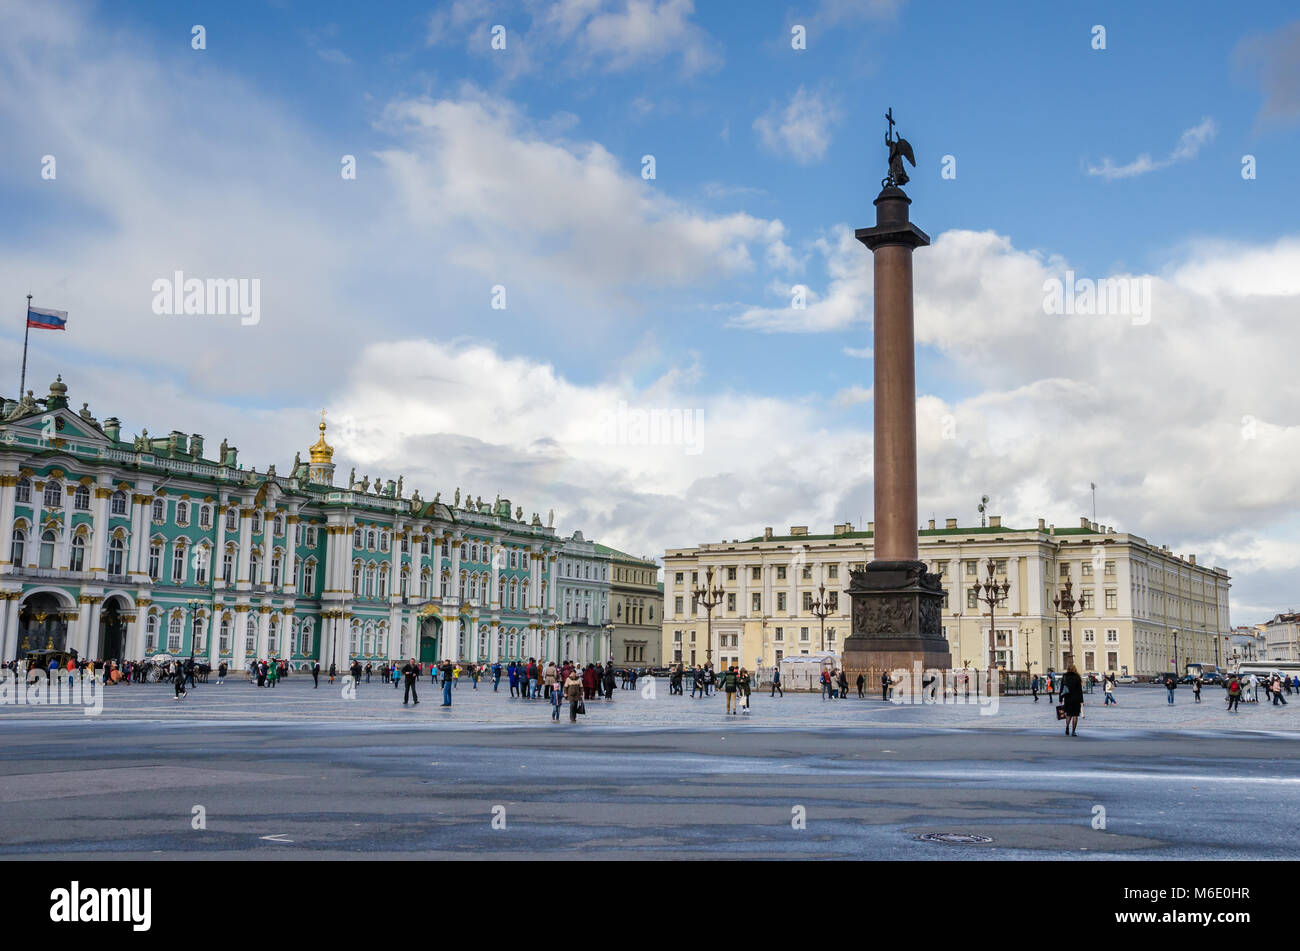 San Petersburgo, Rusia - 30 de septiembre 2016: la Plaza del Palacio con el Palacio de Invierno, el Alexander columna, columna de granito rojo (el más alto de su clase i Foto de stock